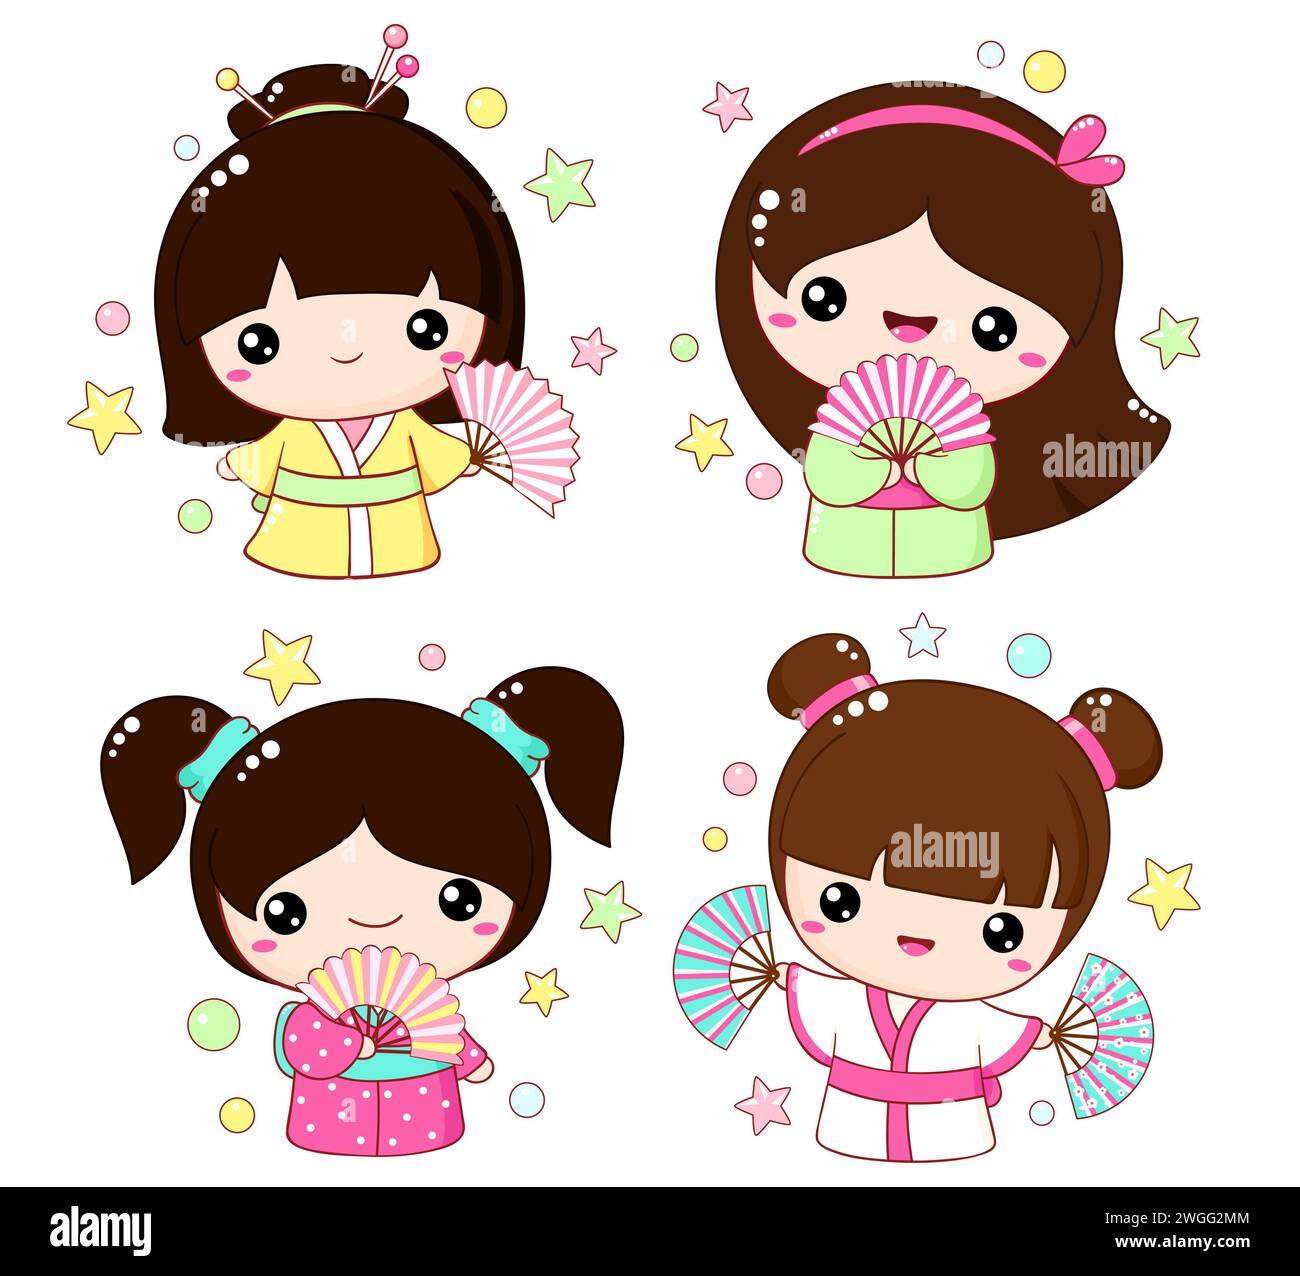 Ensemble de jolies petites filles avec des fans dans le style kawaii. Collection de la saison hanami de la poupée kokeshi traditionnelle japonaise en kimono. Illustration vectorielle E Banque D'Images